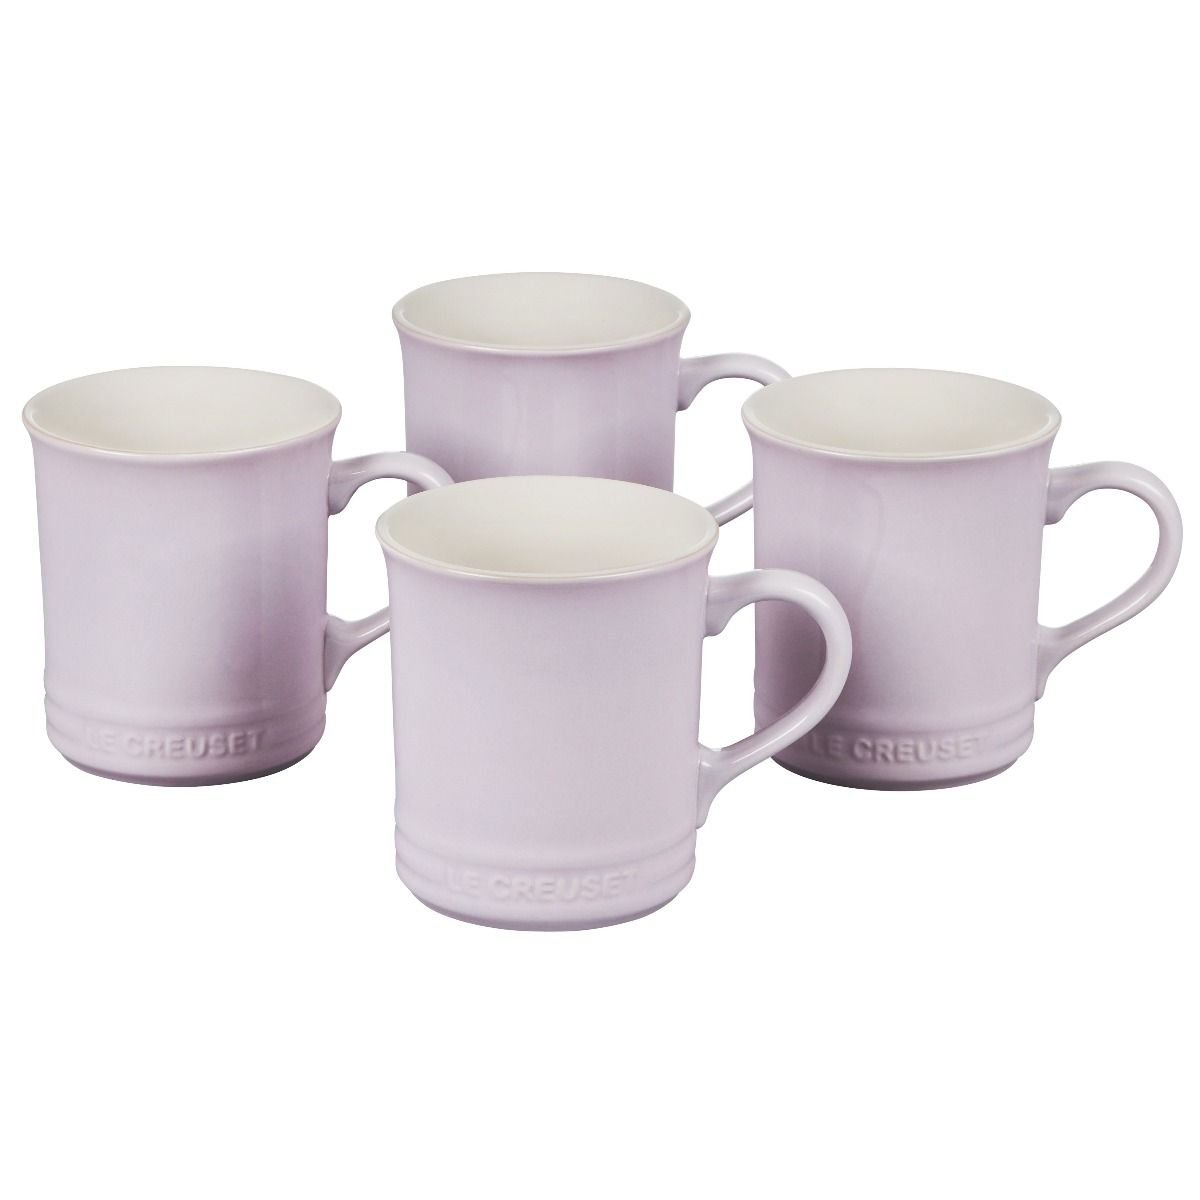 Le Creuset Stoneware Mugs Set of 4 - Licorice